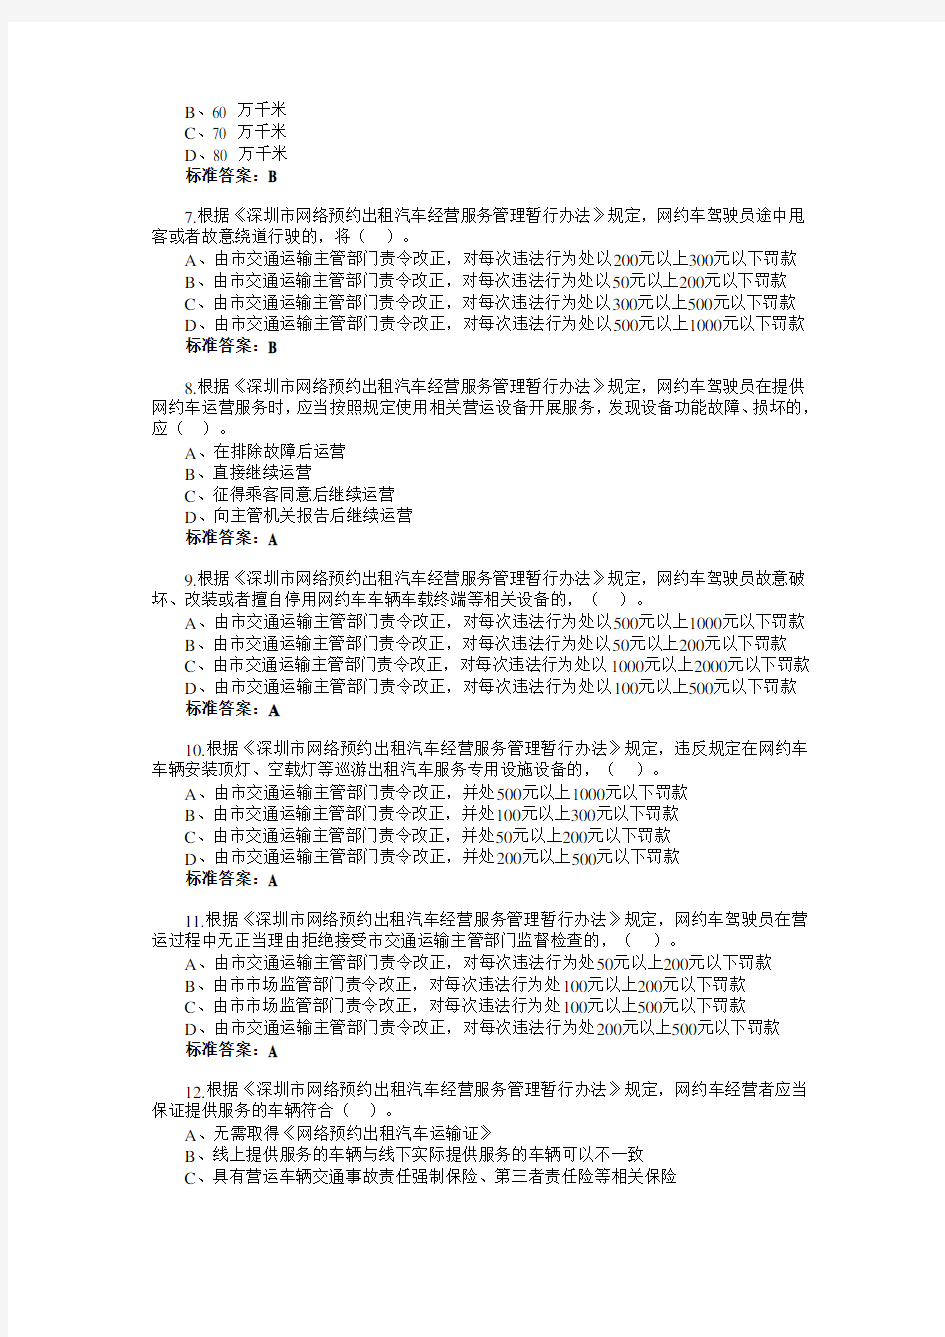 2019年度网约车从业人员资格考试深圳市区域科目考试试题库